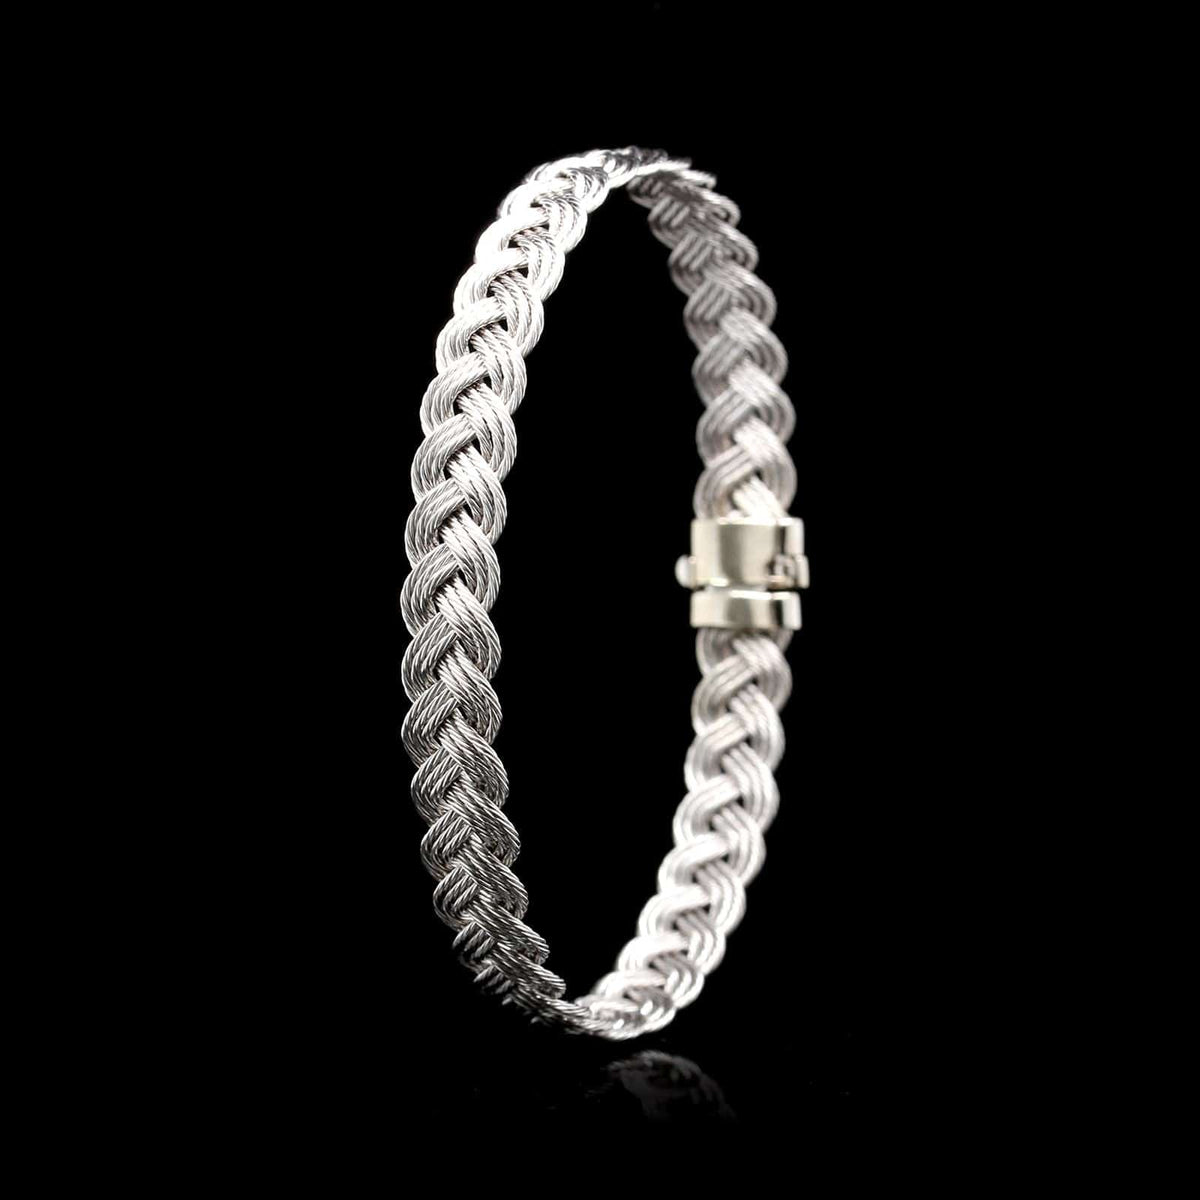 14K White Gold Estate Braided Bracelet